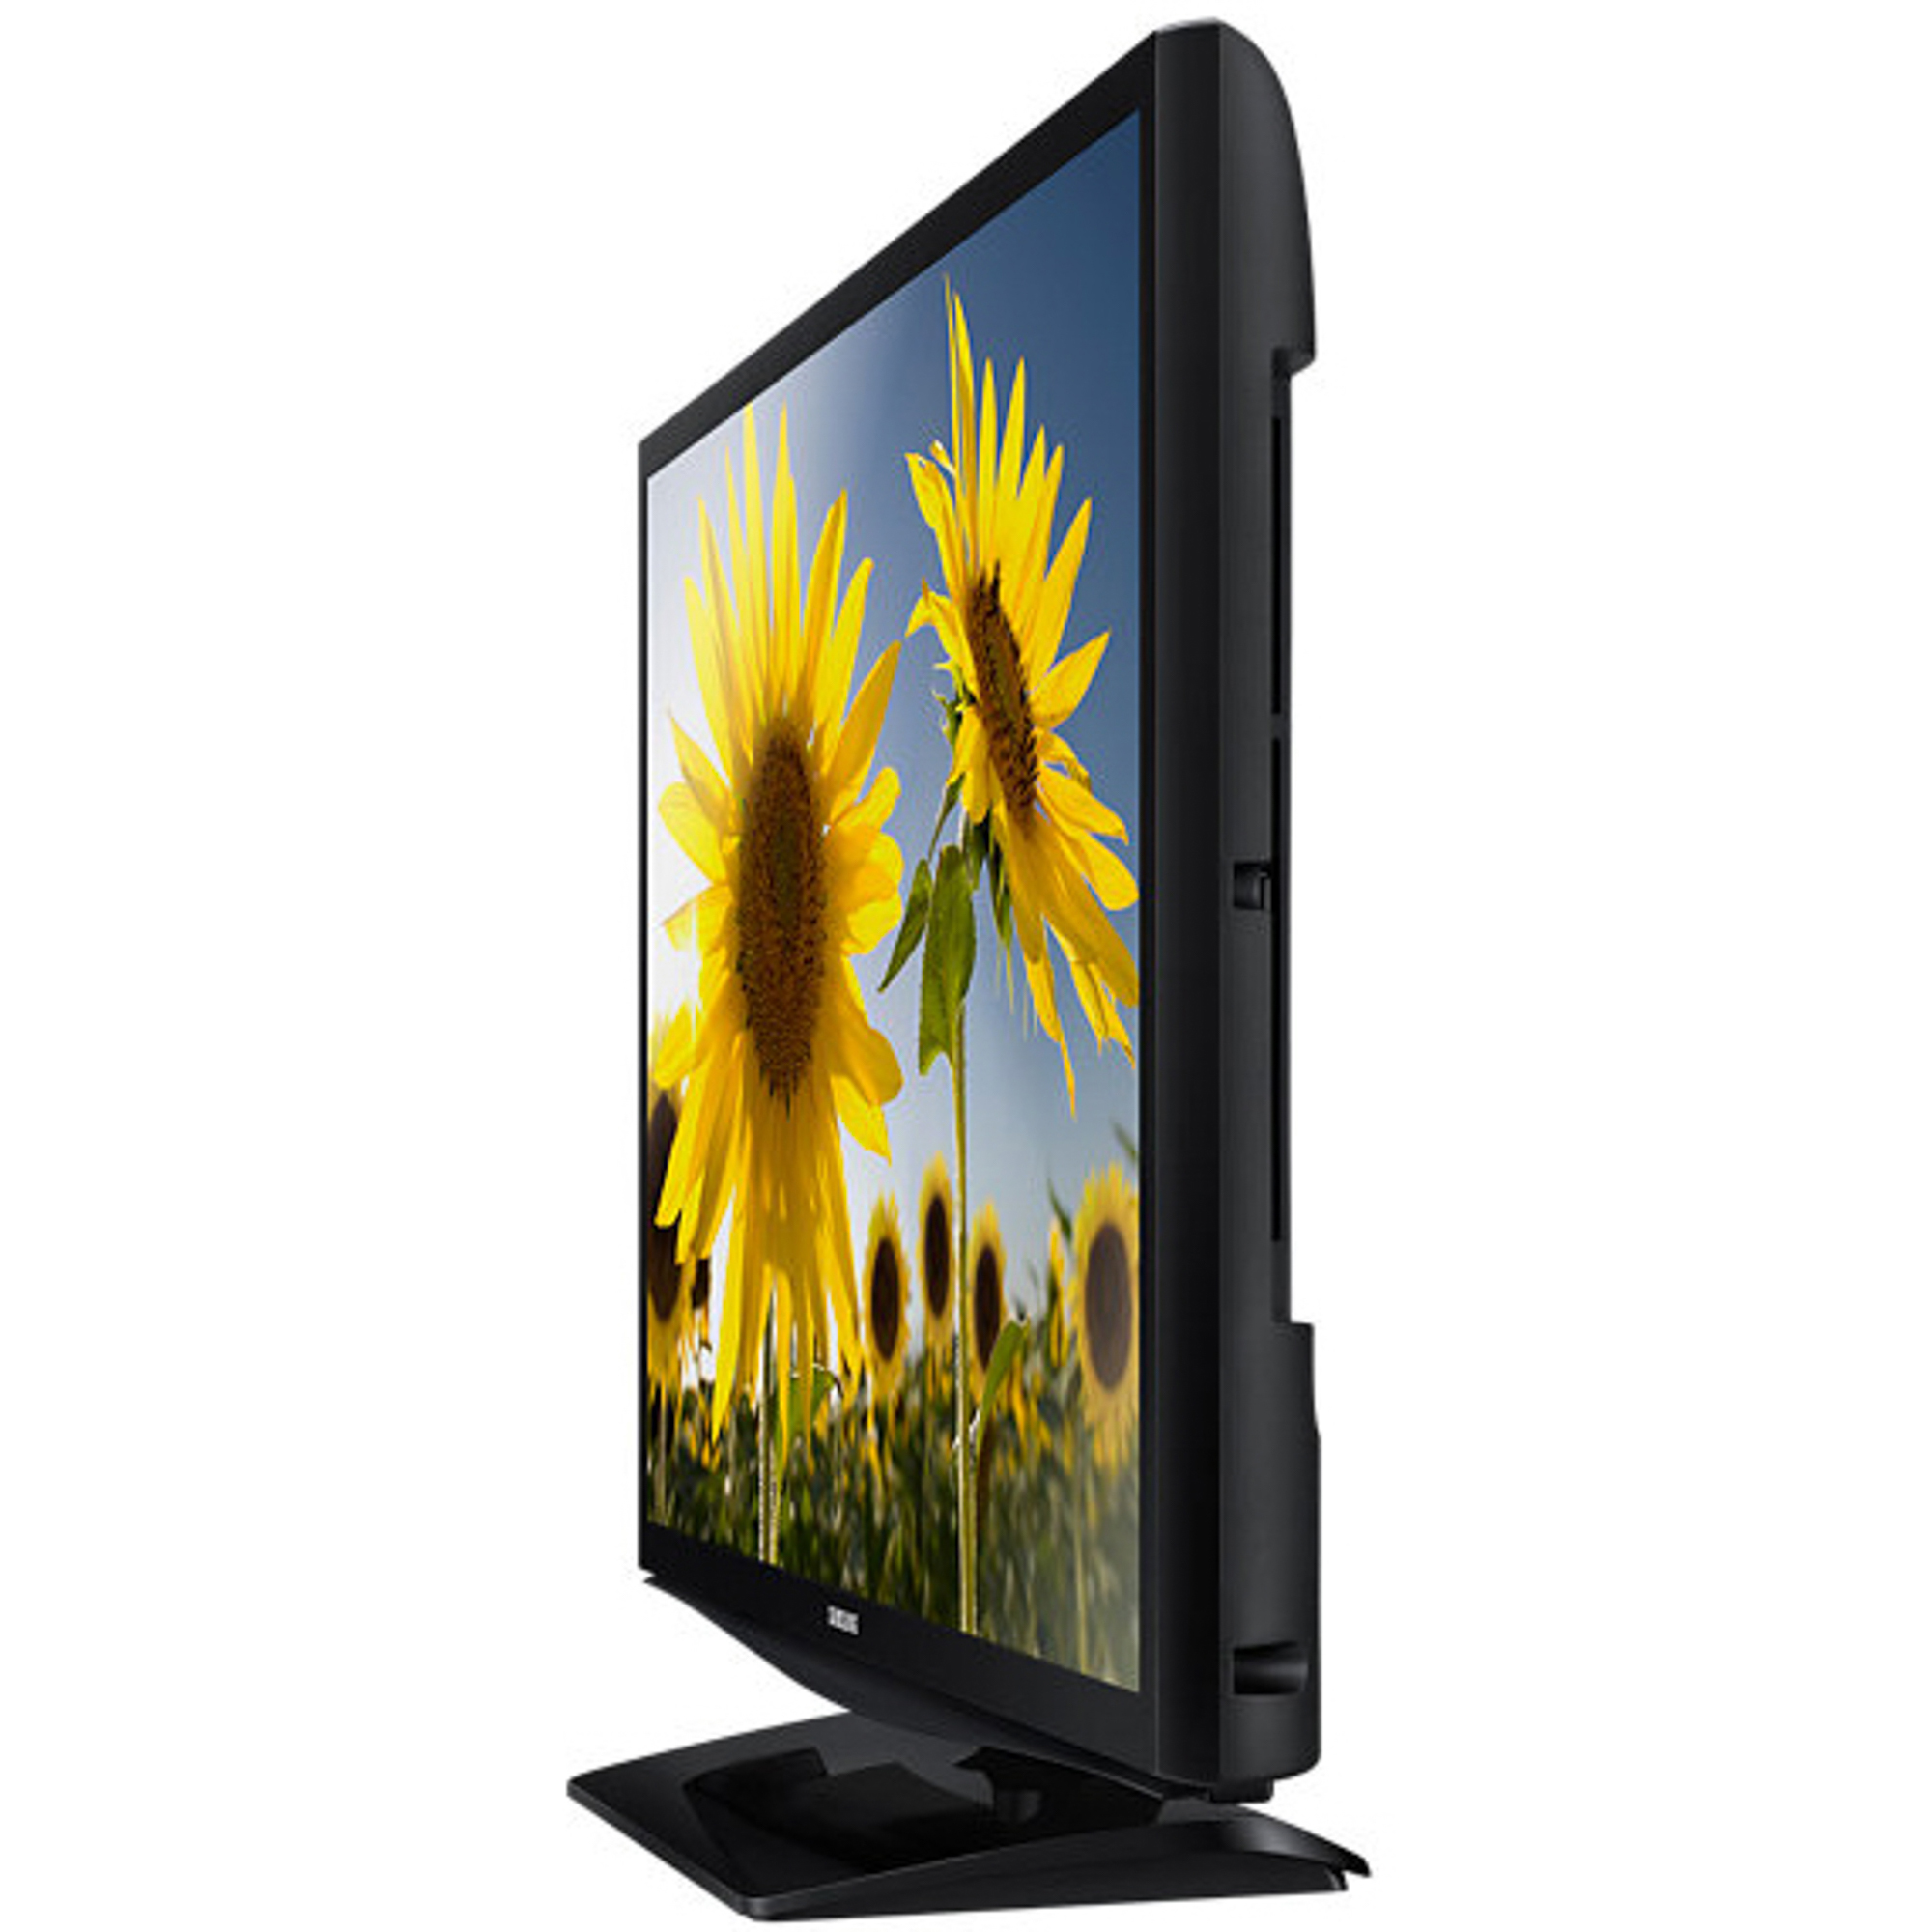 Телевизор Samsung UE24H4080 Black, цвет черный UE24H4080AUXRU - фото 2